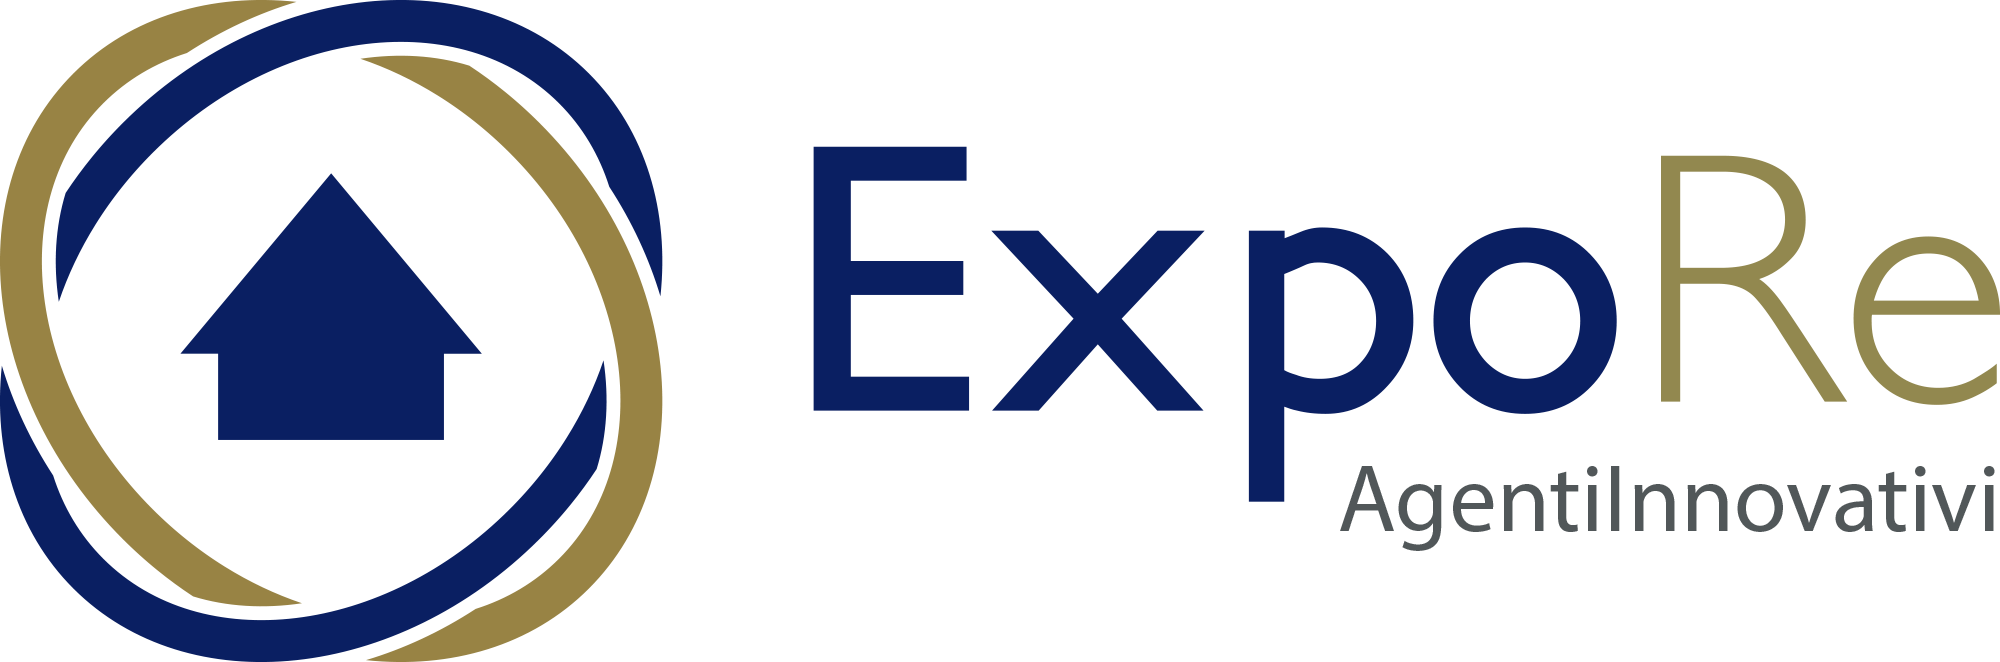 ExpoRe - L'innovativa agenzia immobiliare milanese